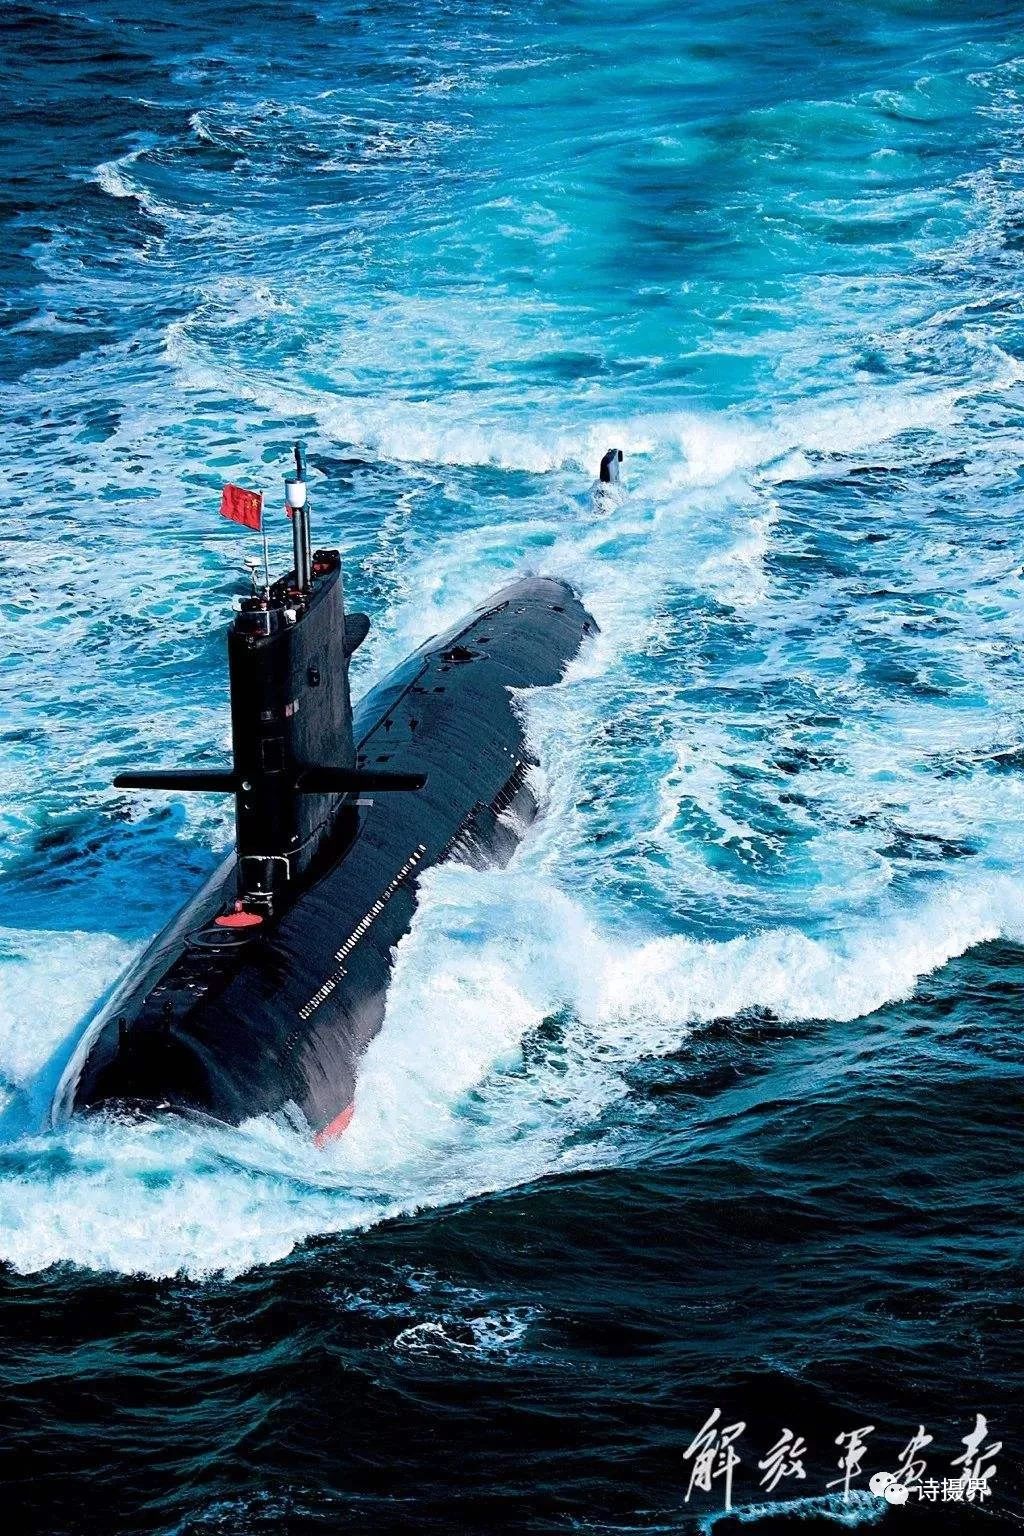 中国人民海军舰艇高清图片欣赏与收藏